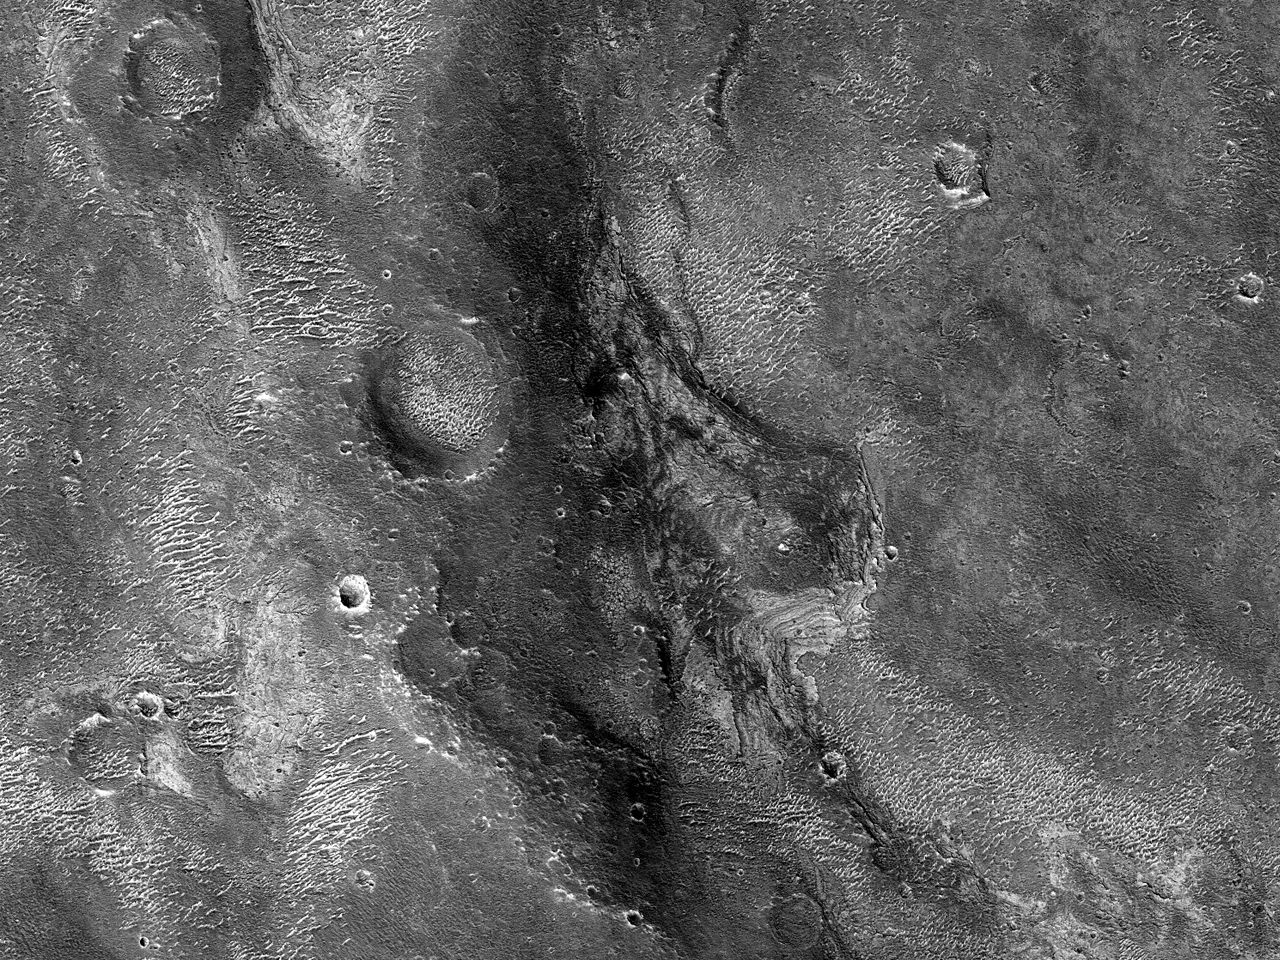 Estrats de tons clars a les planes del sud de labisme Melas (Melas Chasma)